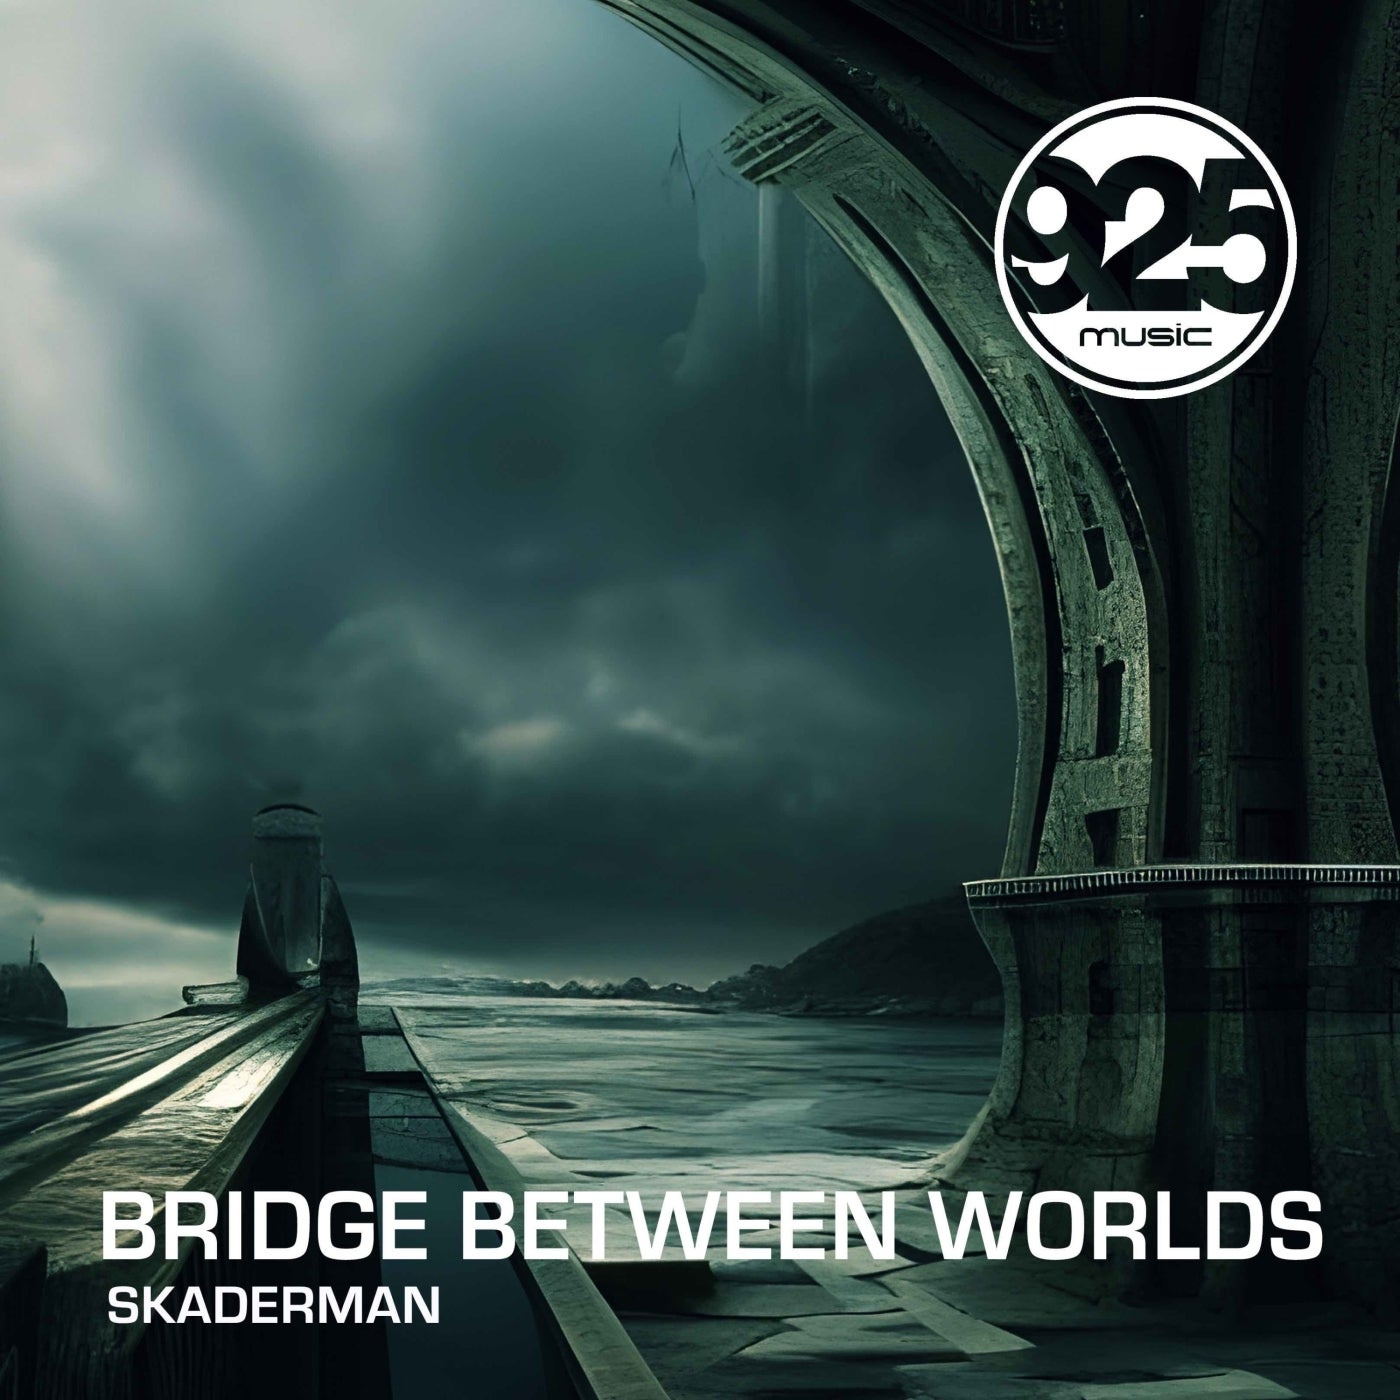 Bridge Between Worlds